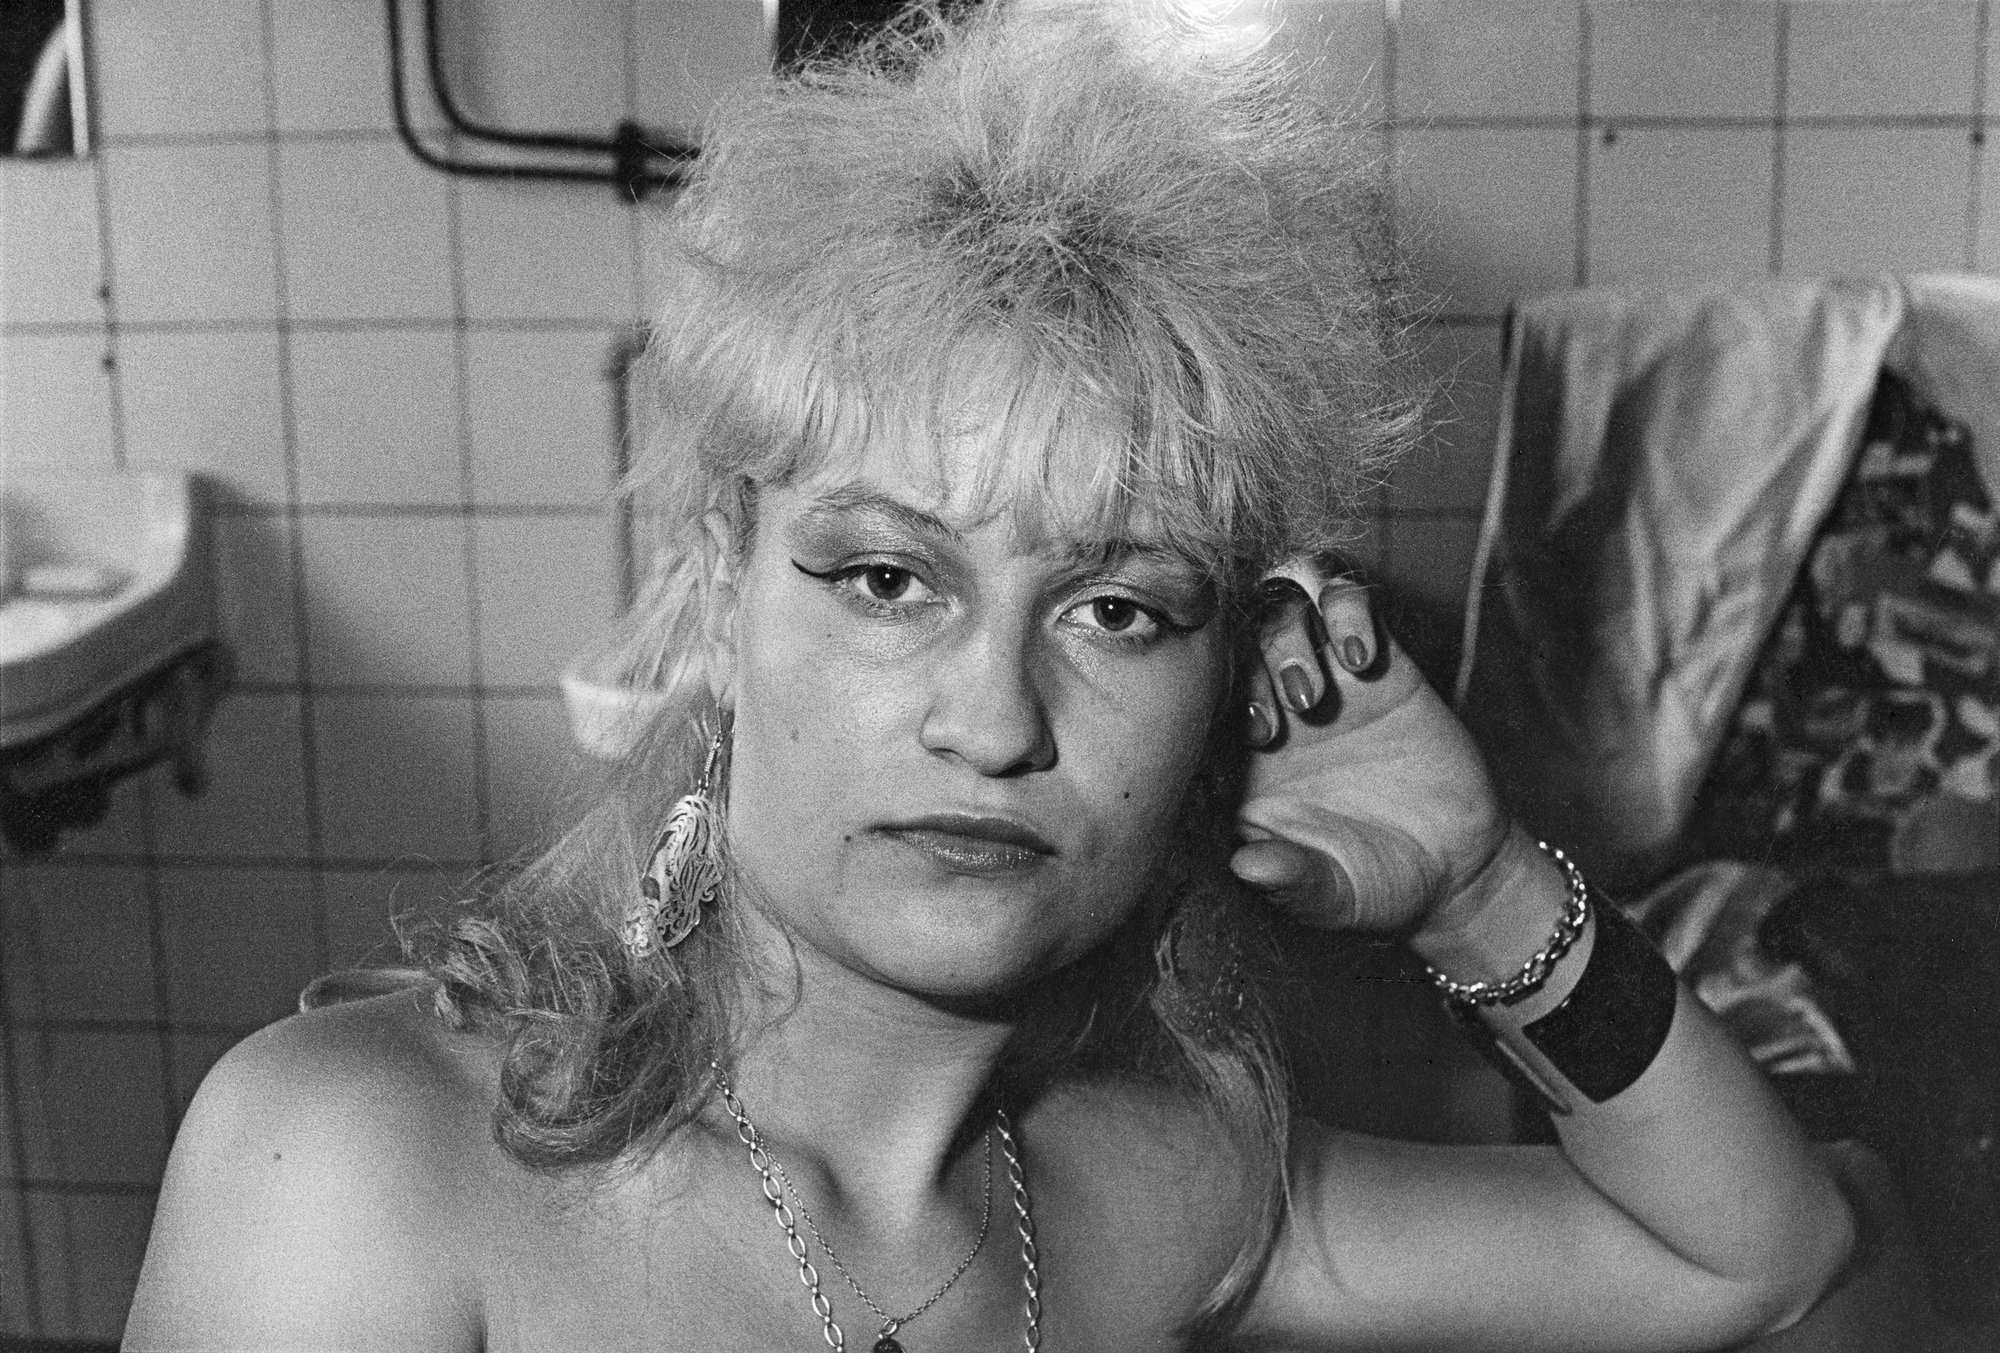 Участница развлекательной программы со стриптизом, 1988. Фотограф Уте Малер